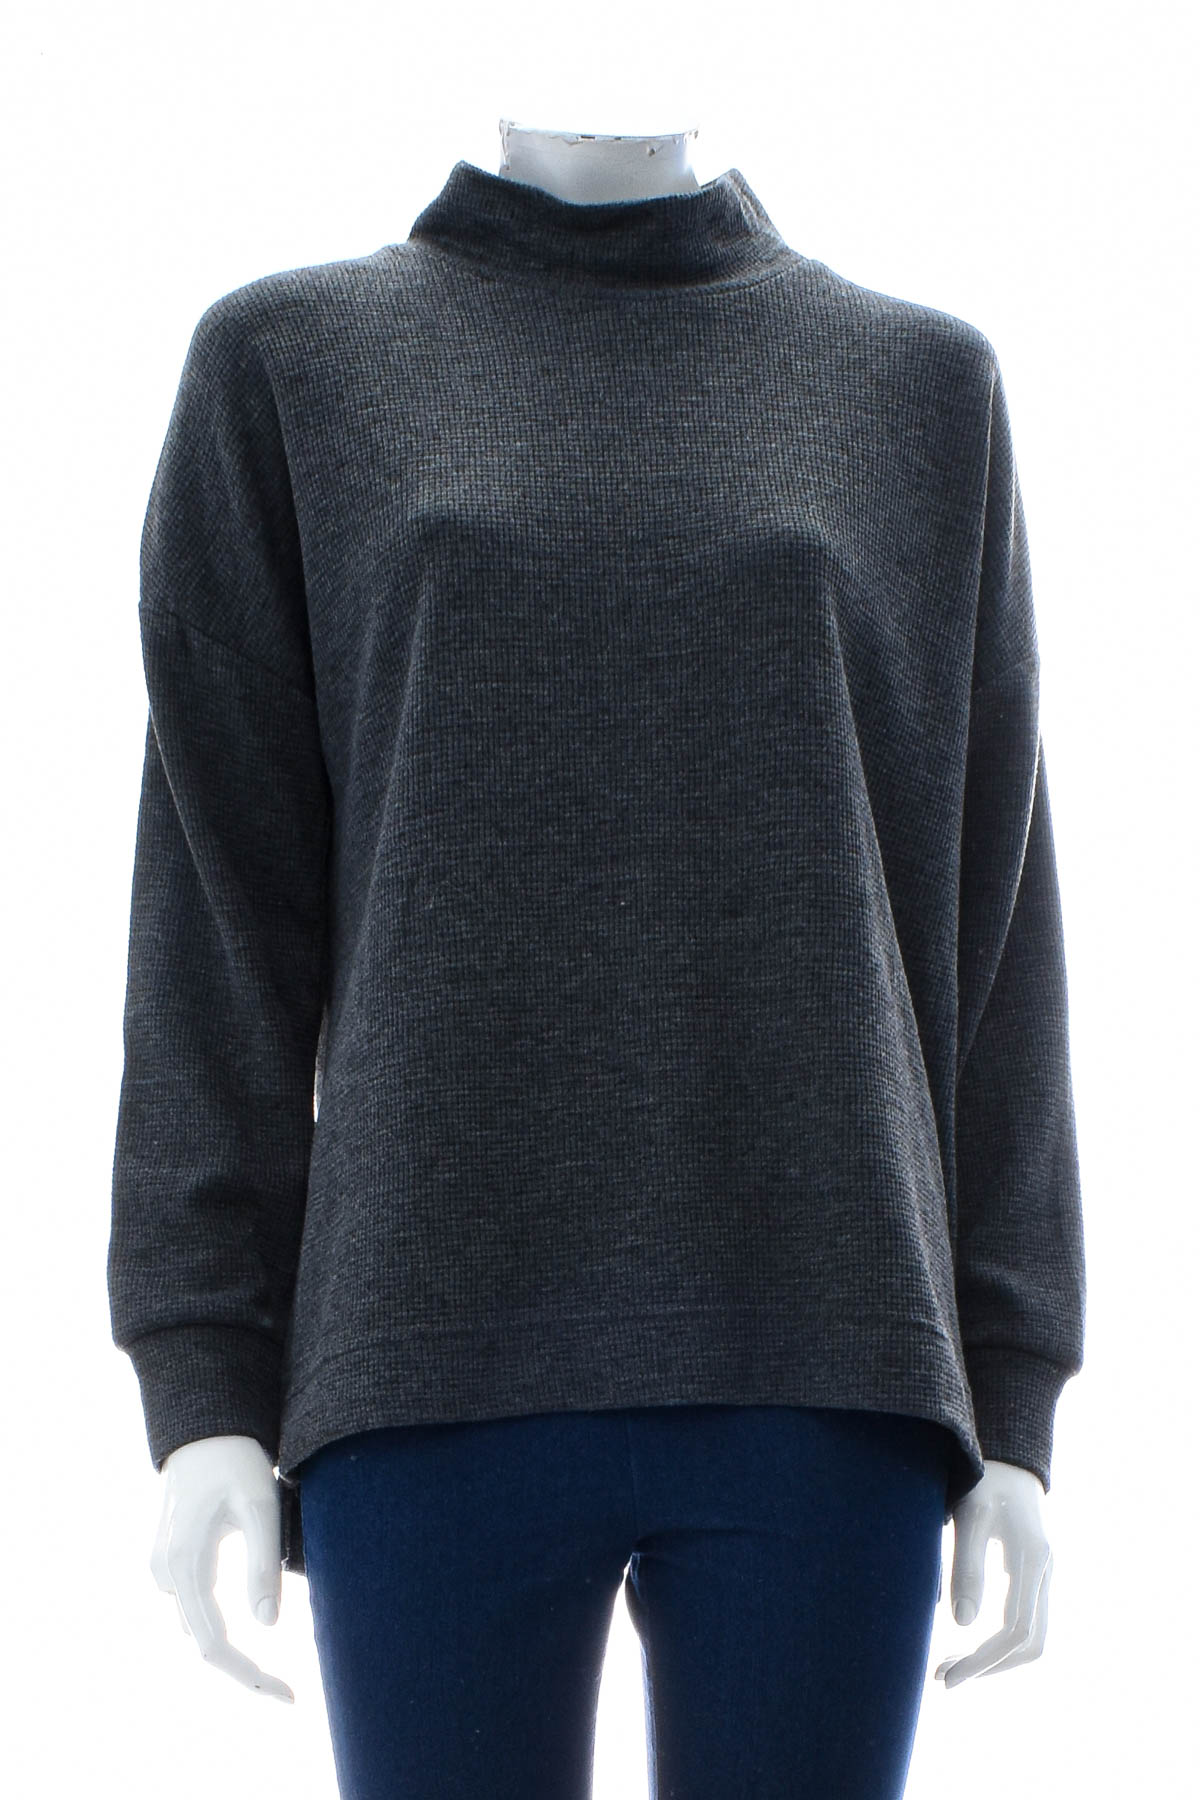 Women's sweater - Suzanne Grae - 0